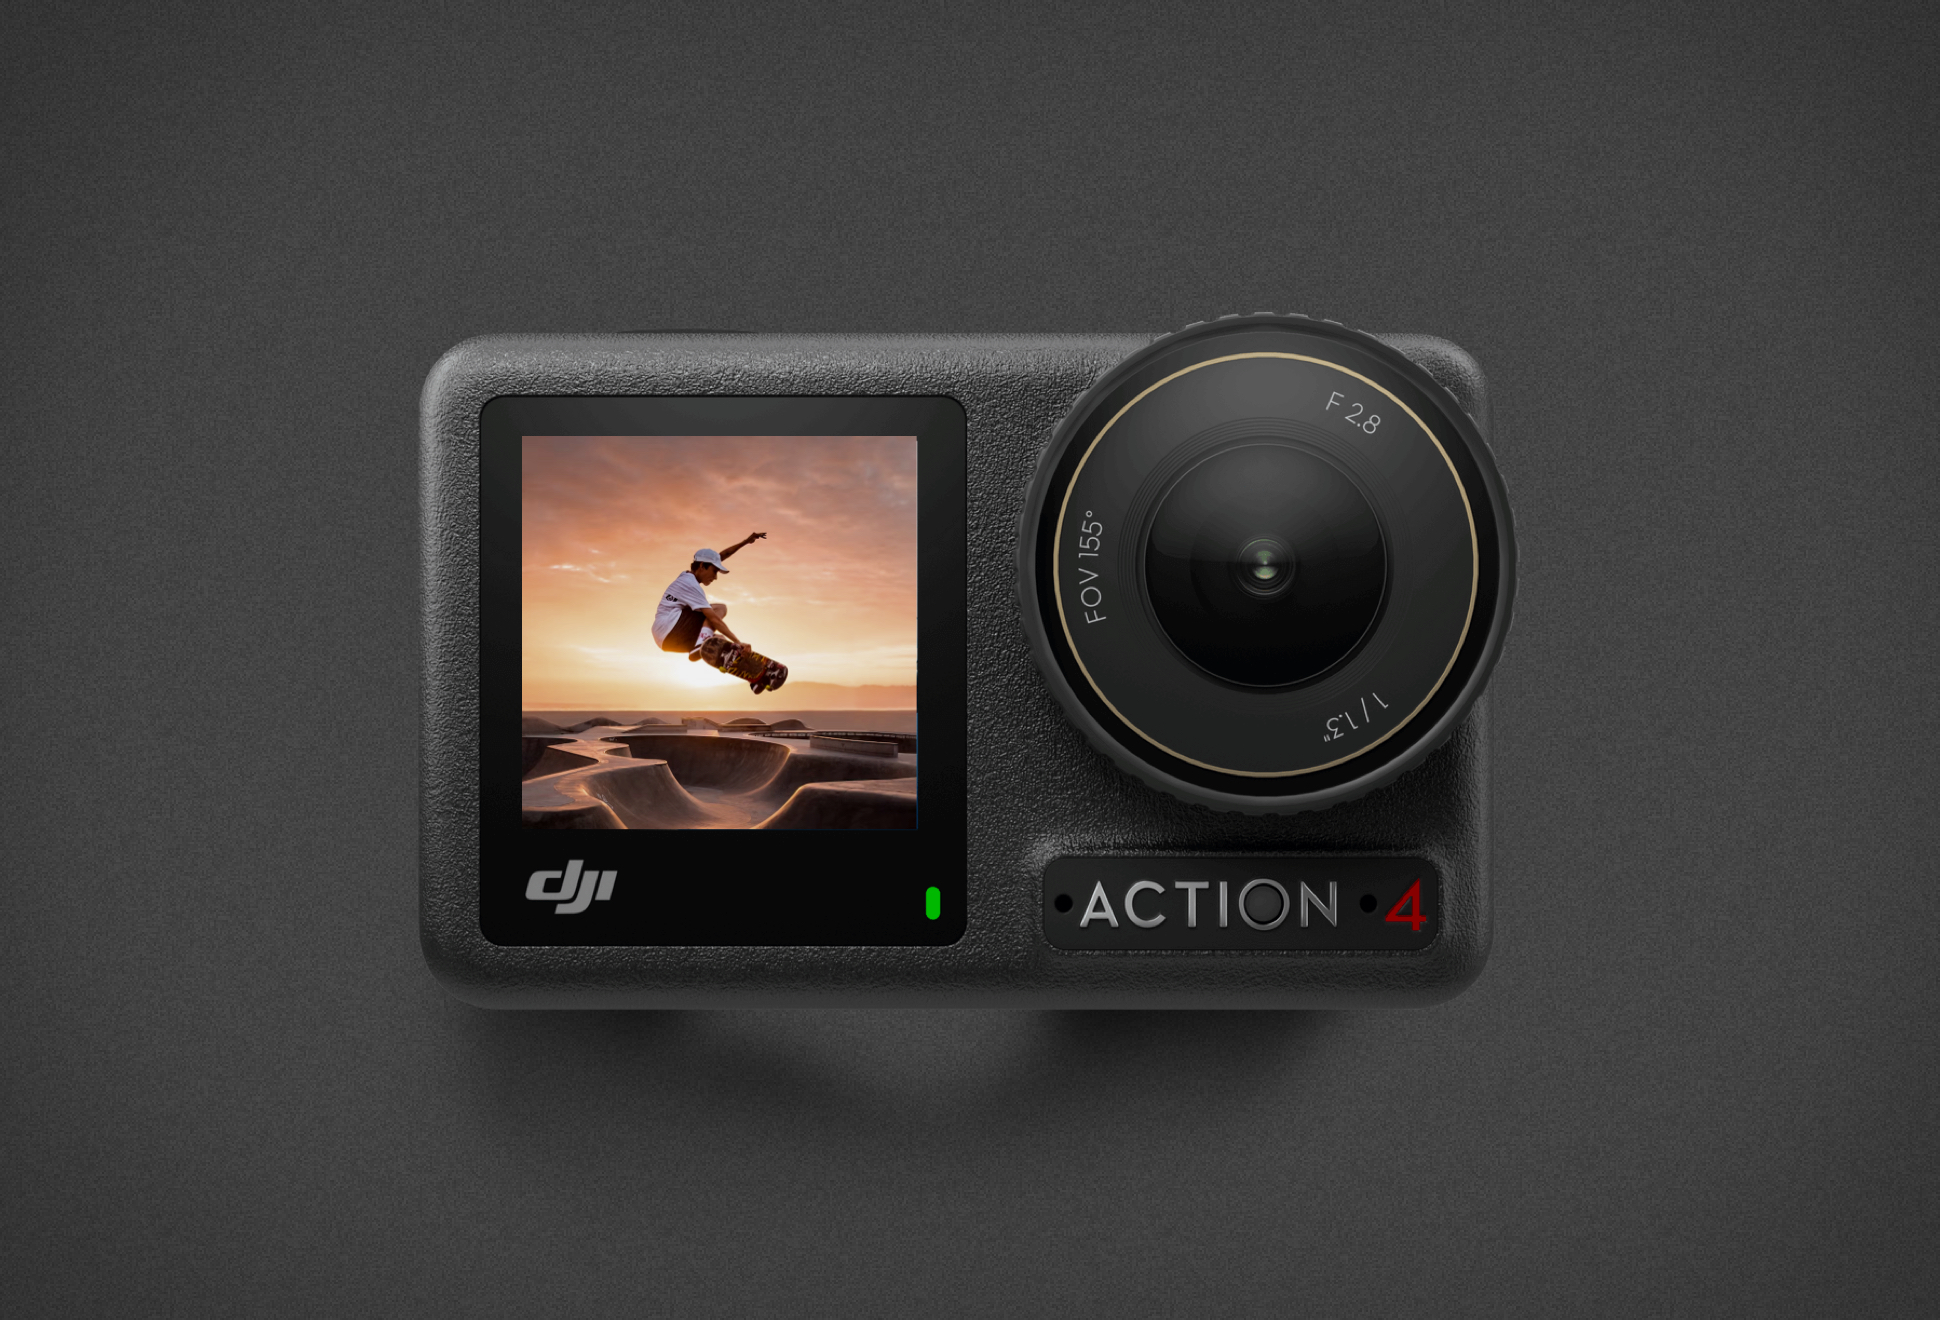 Dji Osmo Action 4 Camera: A Melhor Câmera De Ação Do Mercado - Image